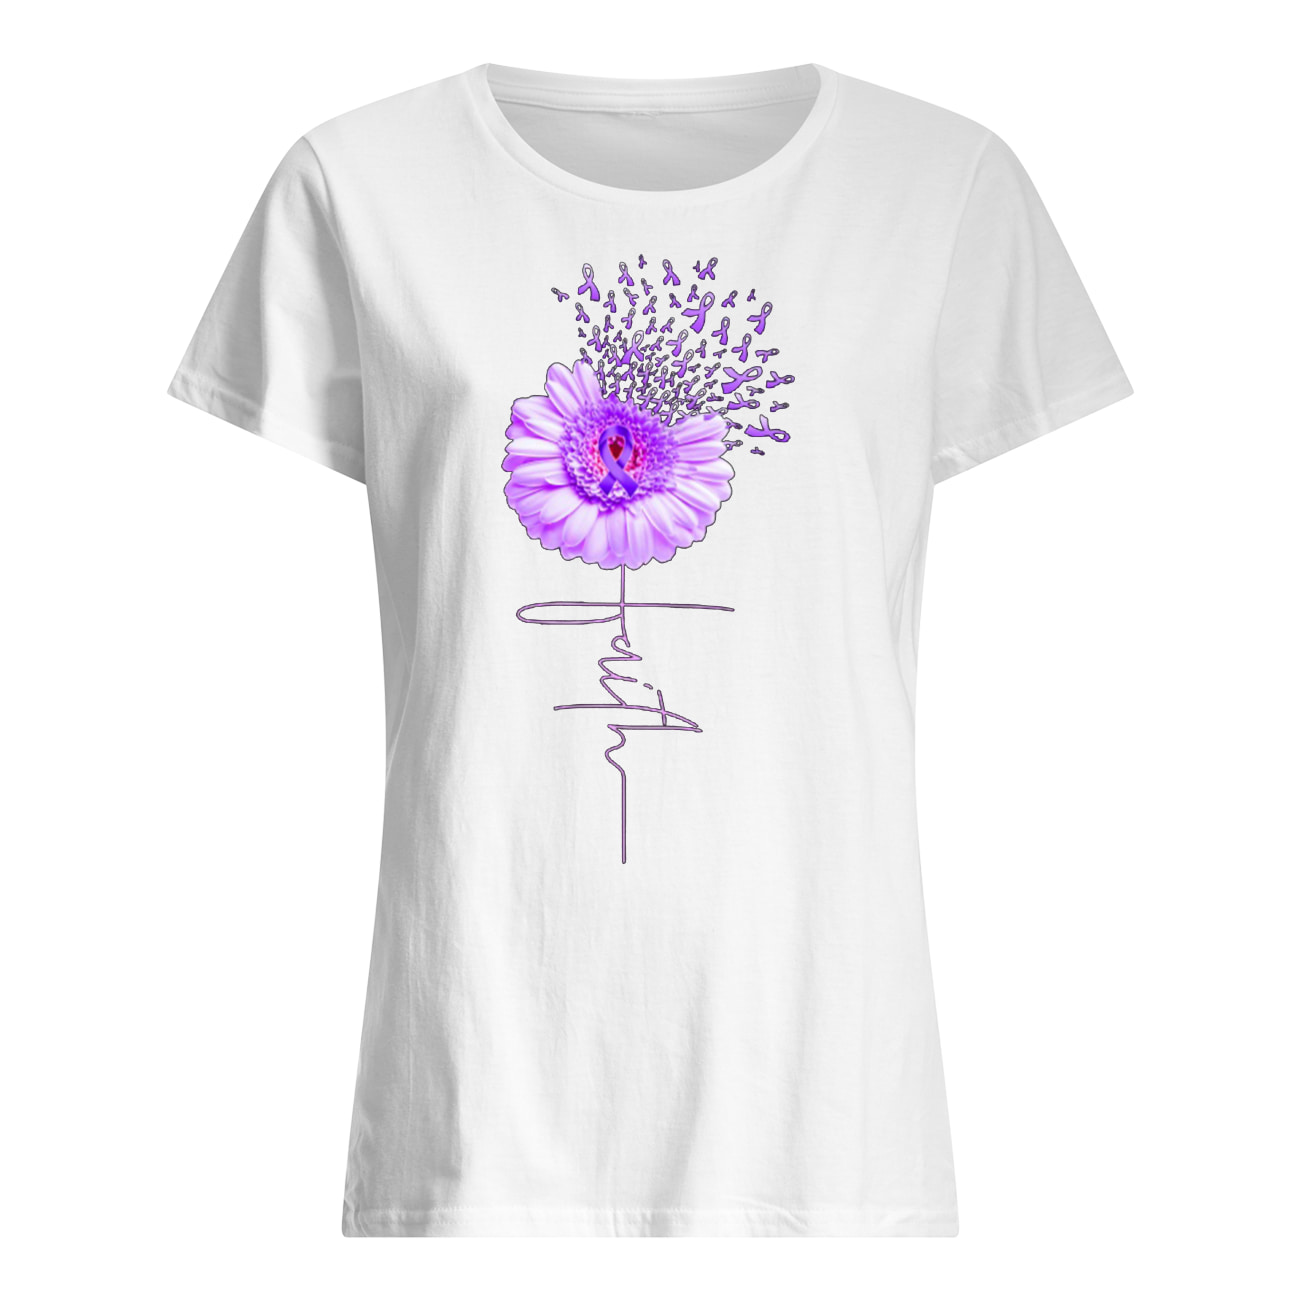 Daisy flower faith alzheimer's awareness women's shirt